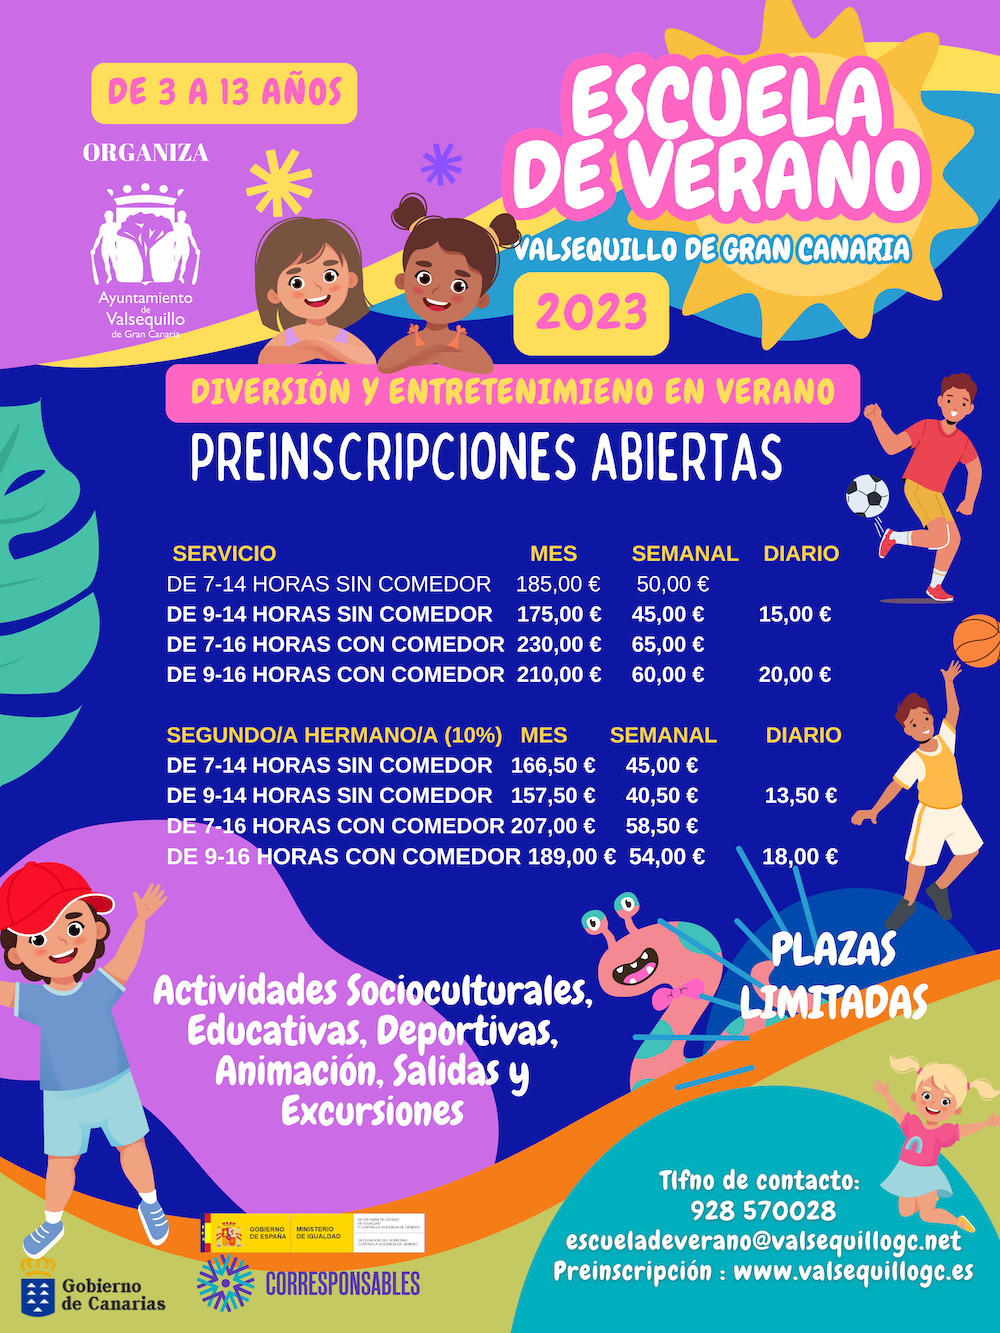 Featured image for “El Ayuntamiento abre la preinscripción para la Escuela de Verano 2023”